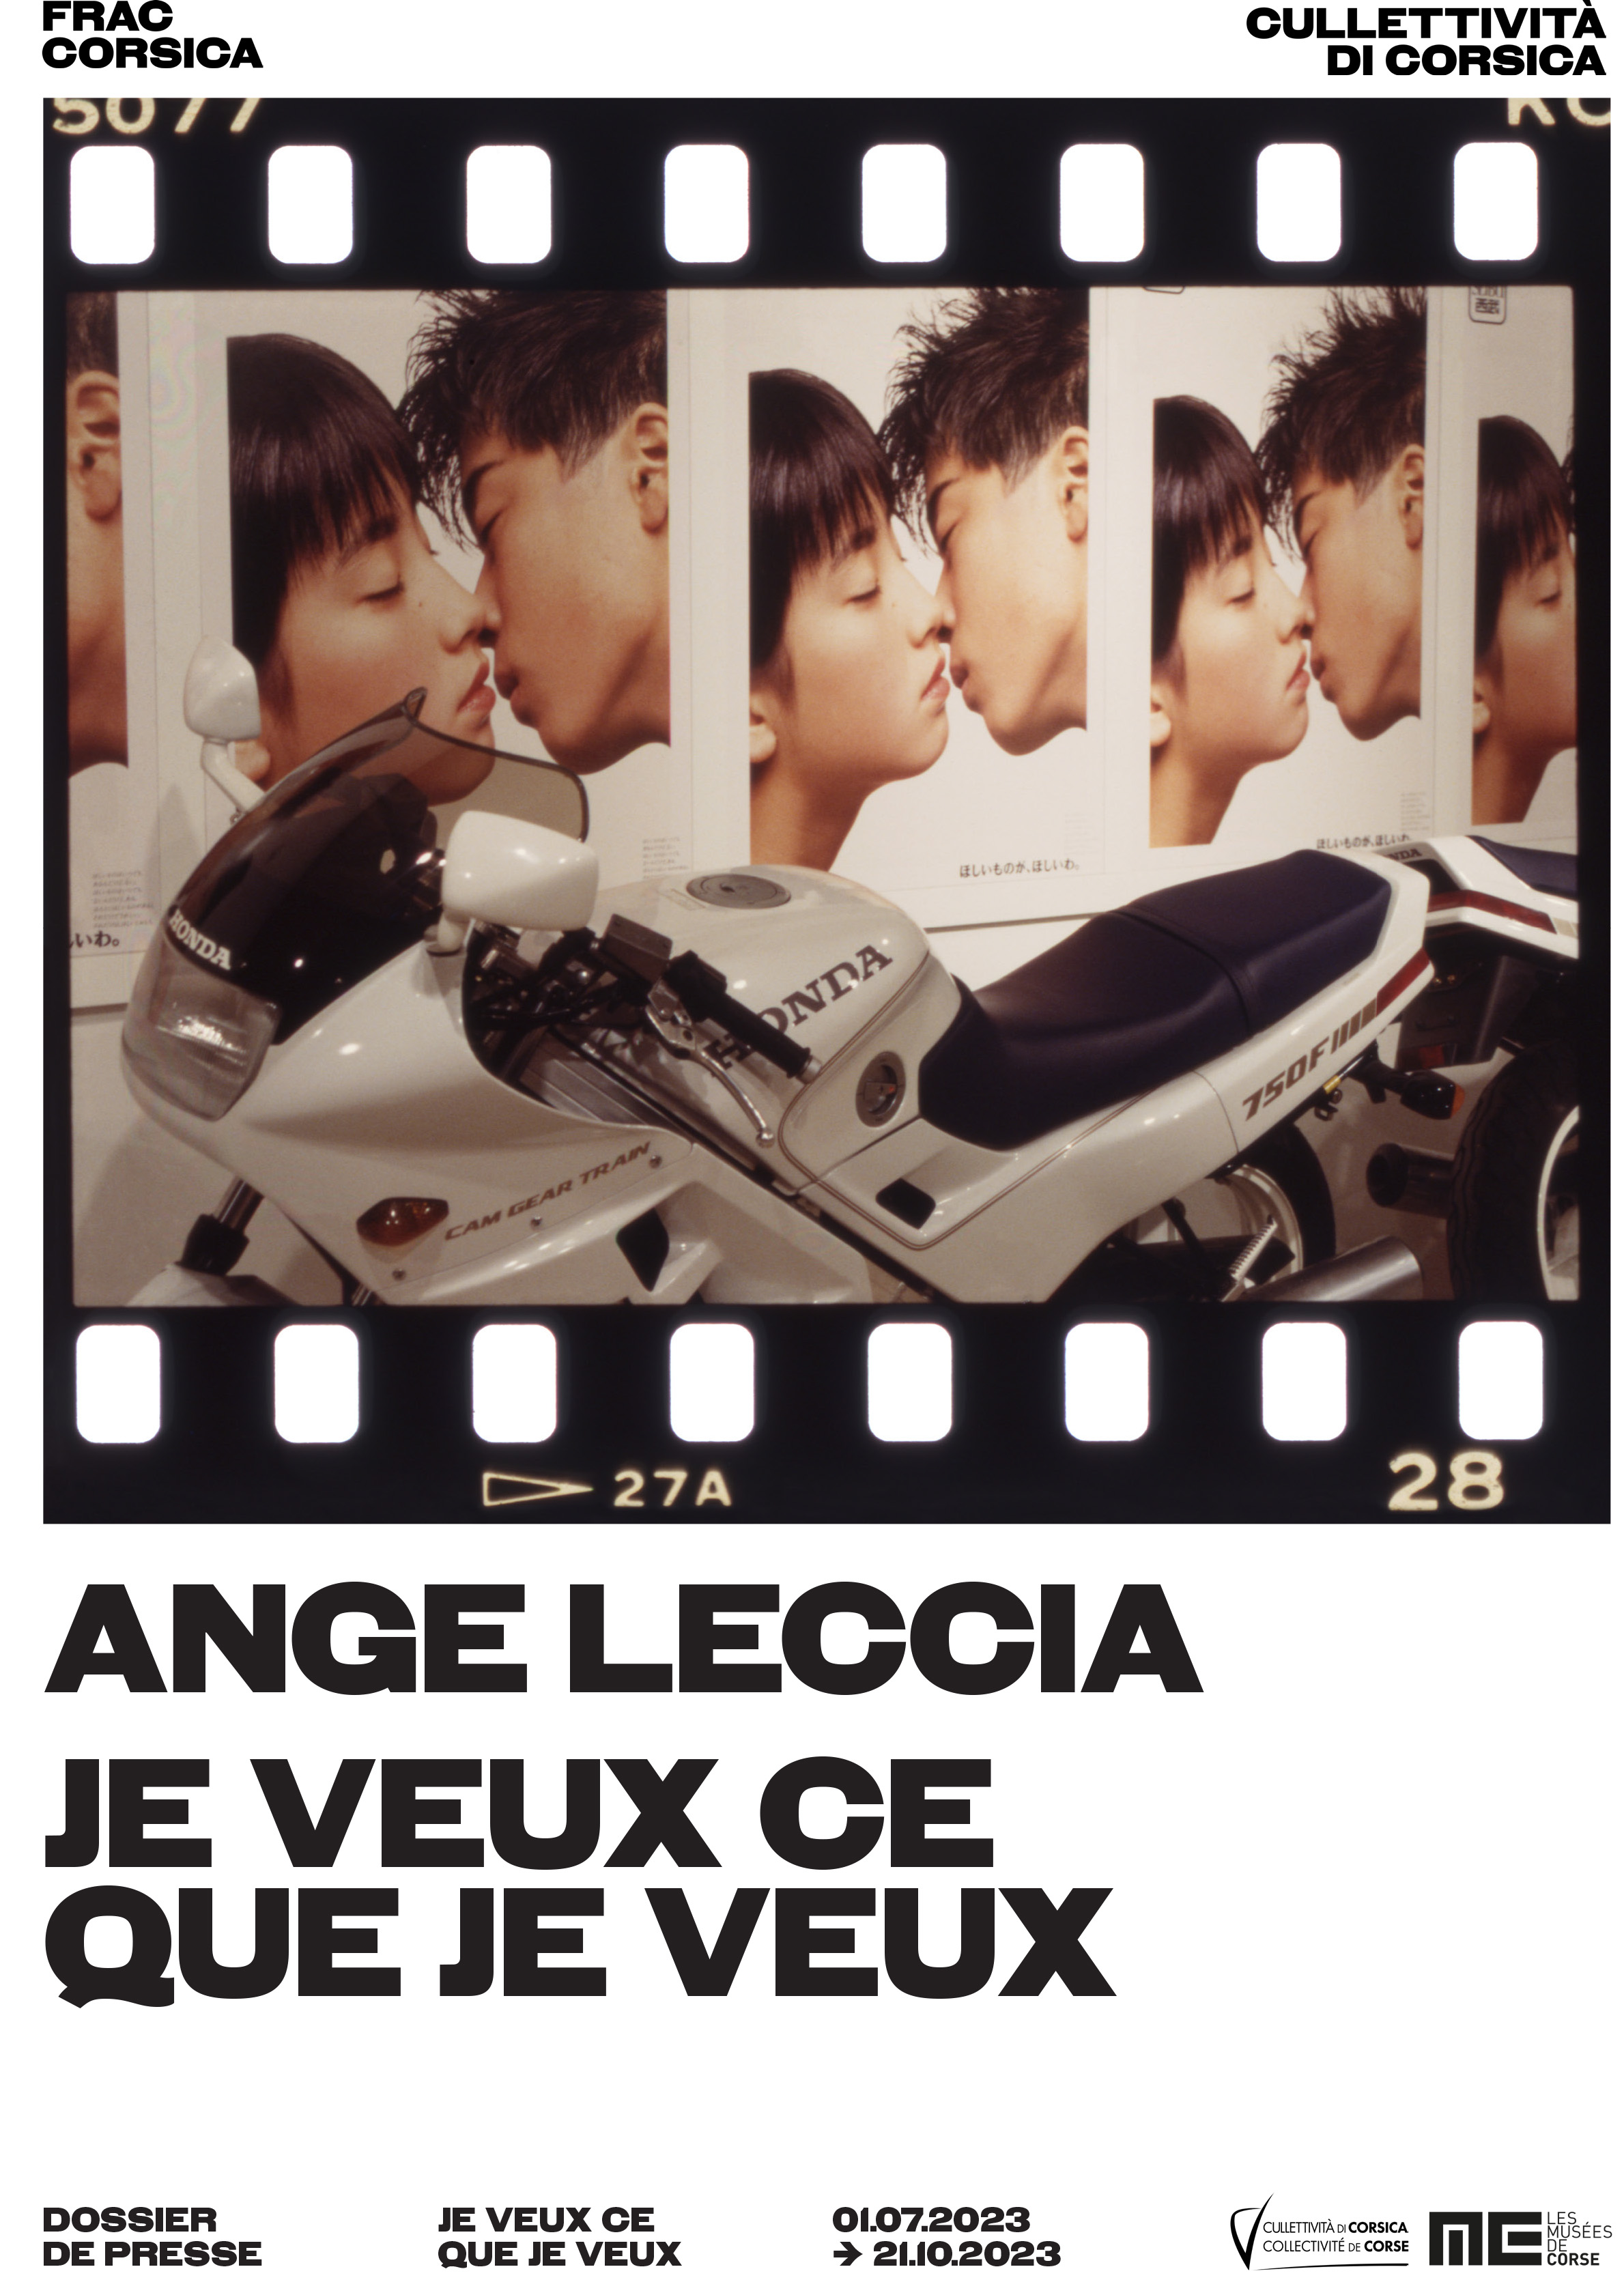 "Je veux ce que je veux", une exposition d'Ange Leccia à découvrir au FRAC Corsica